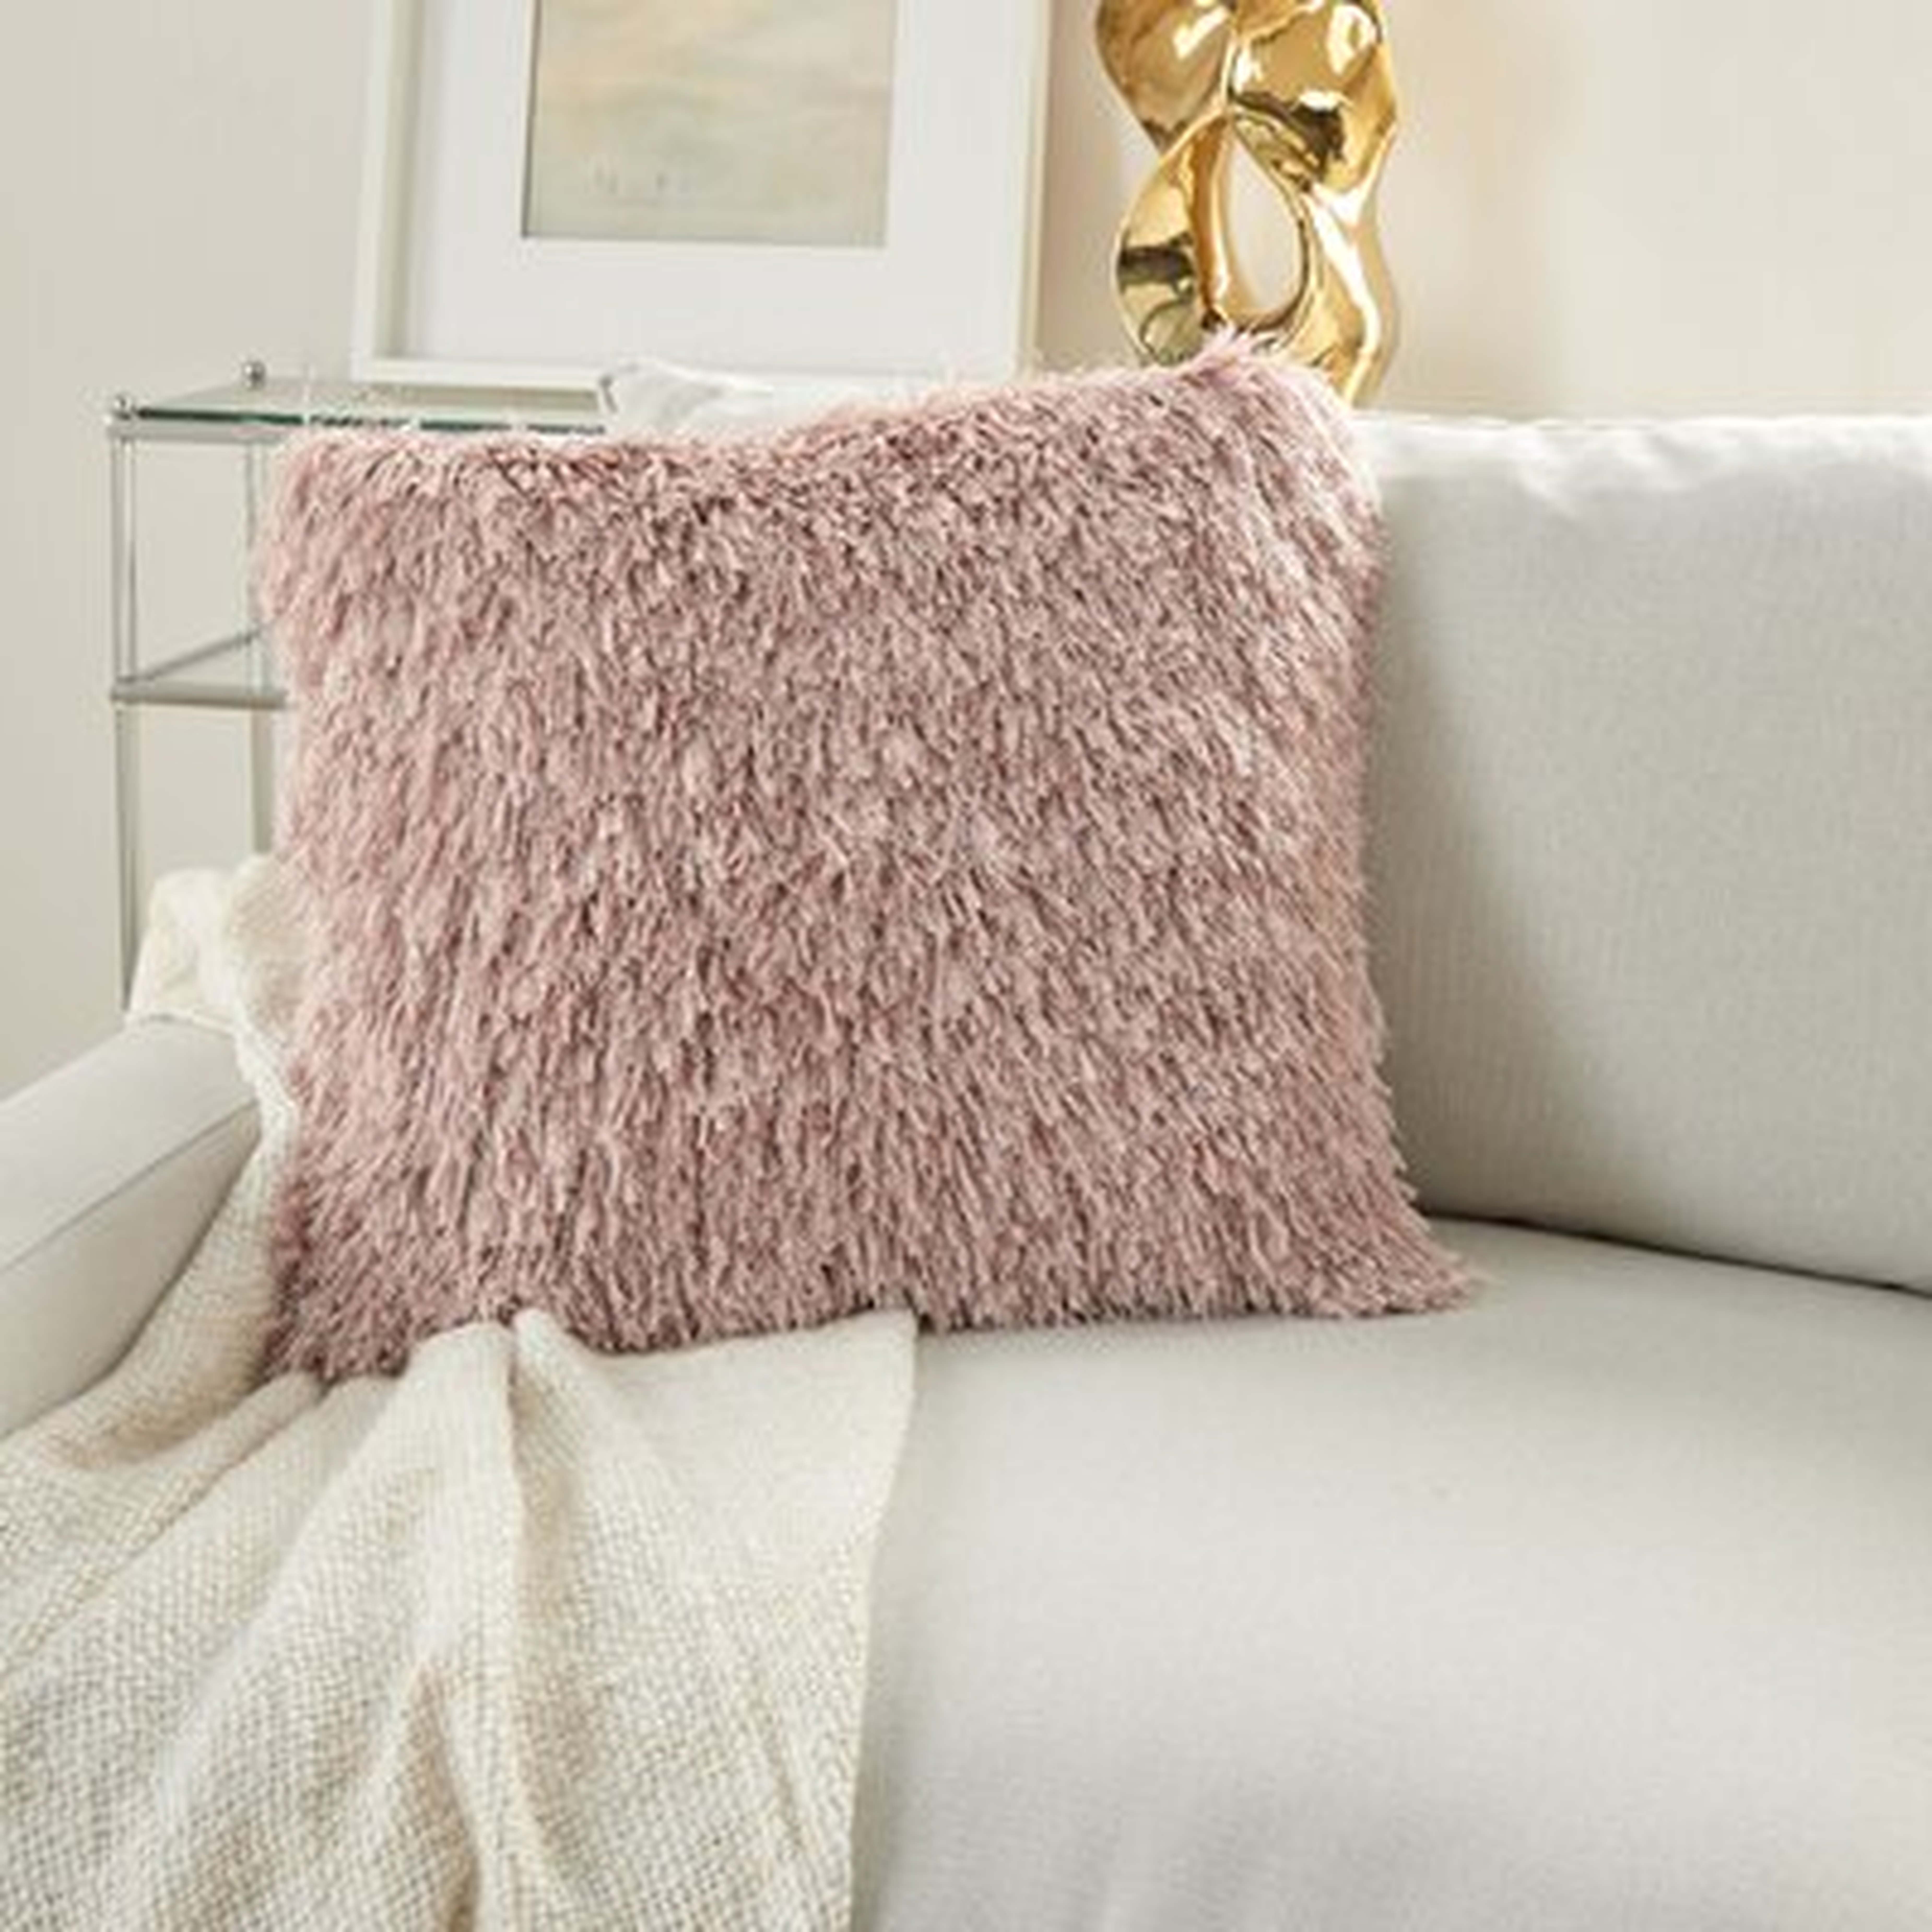 Mertie Shag Square Pillow Cover & Insert - Wayfair